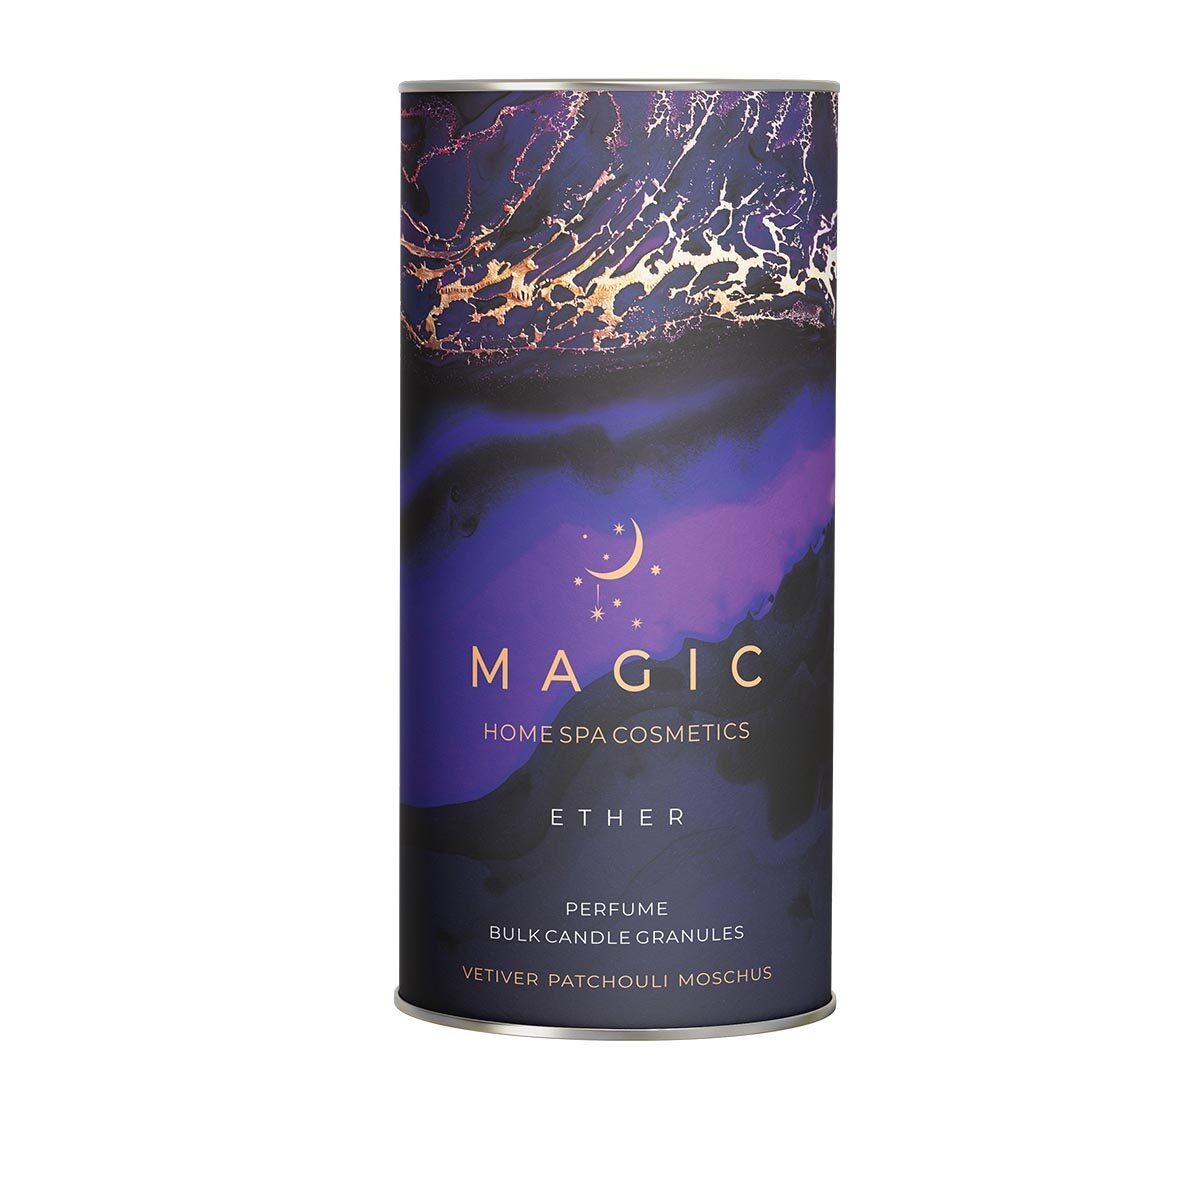 арома свеча magic 5 elements fire orange jasmine vanil 100 мл Свеча-парфюм гранулированная Magic 5 Elements Ether 1,2 кг